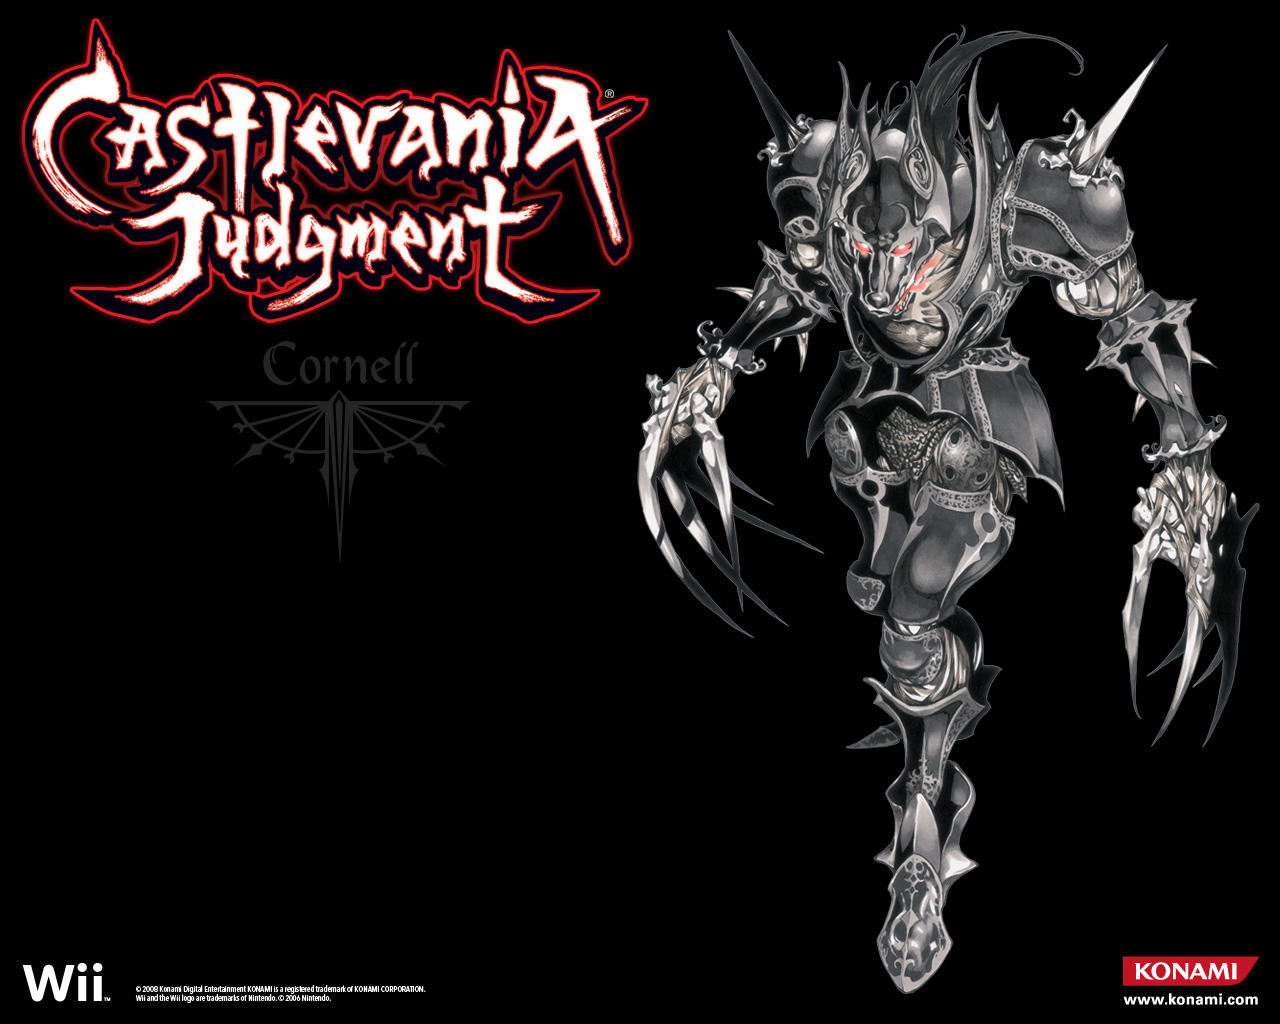 Fotos von Castlevania Castlevania Judgment computerspiel Spiele